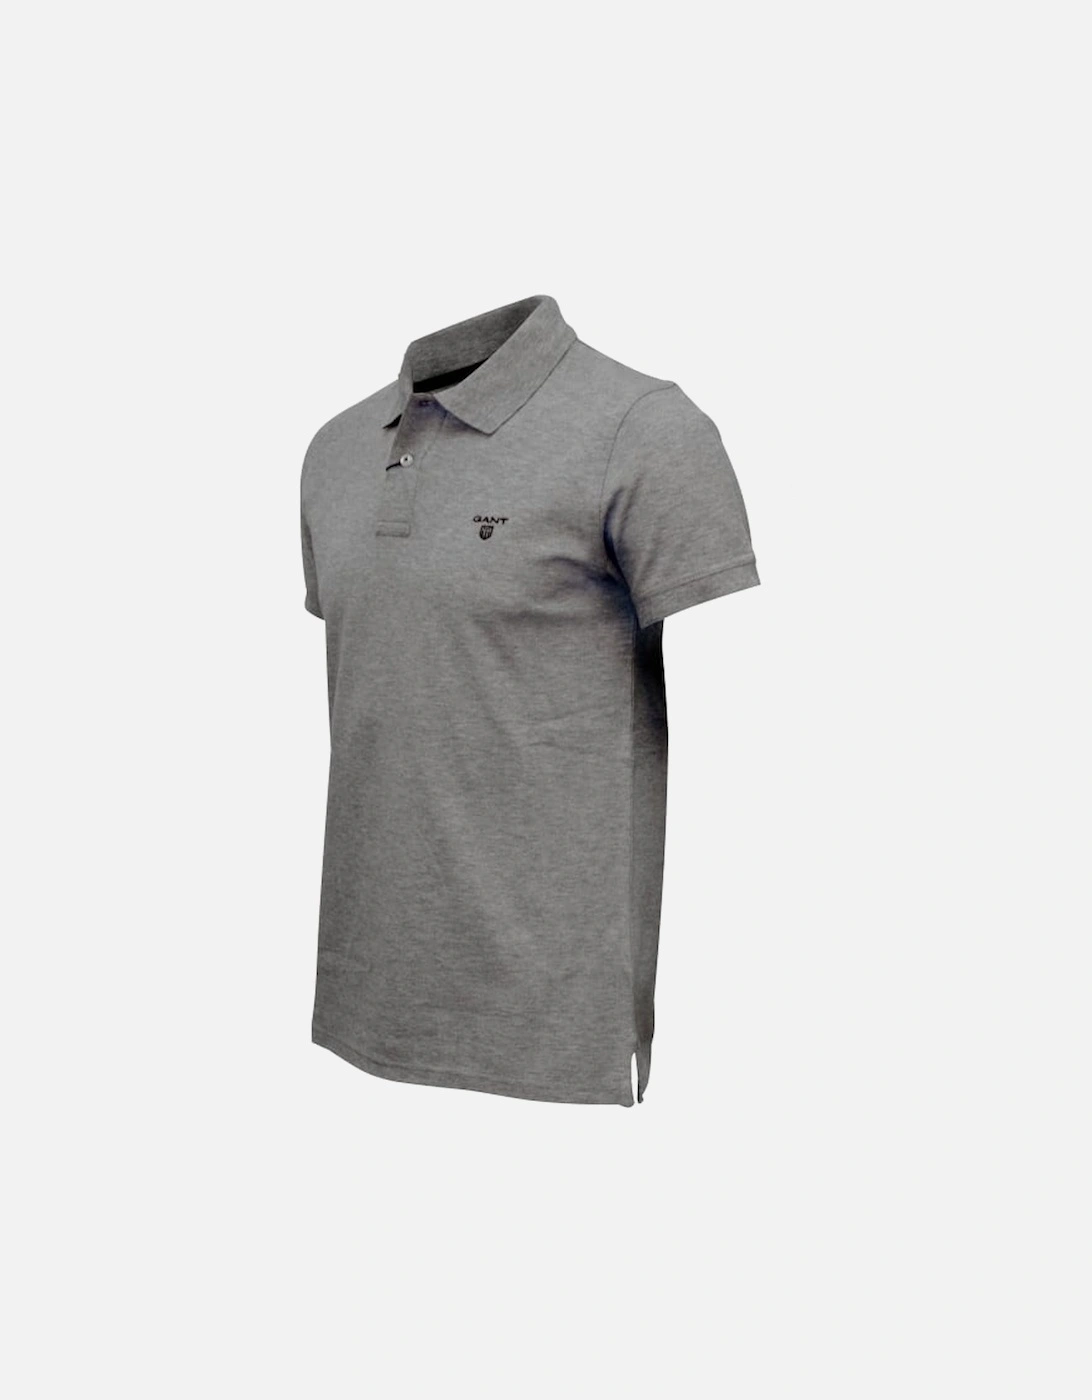 Contrast Collar Pique Rugger Polo Shirt, Grey Melange with navy